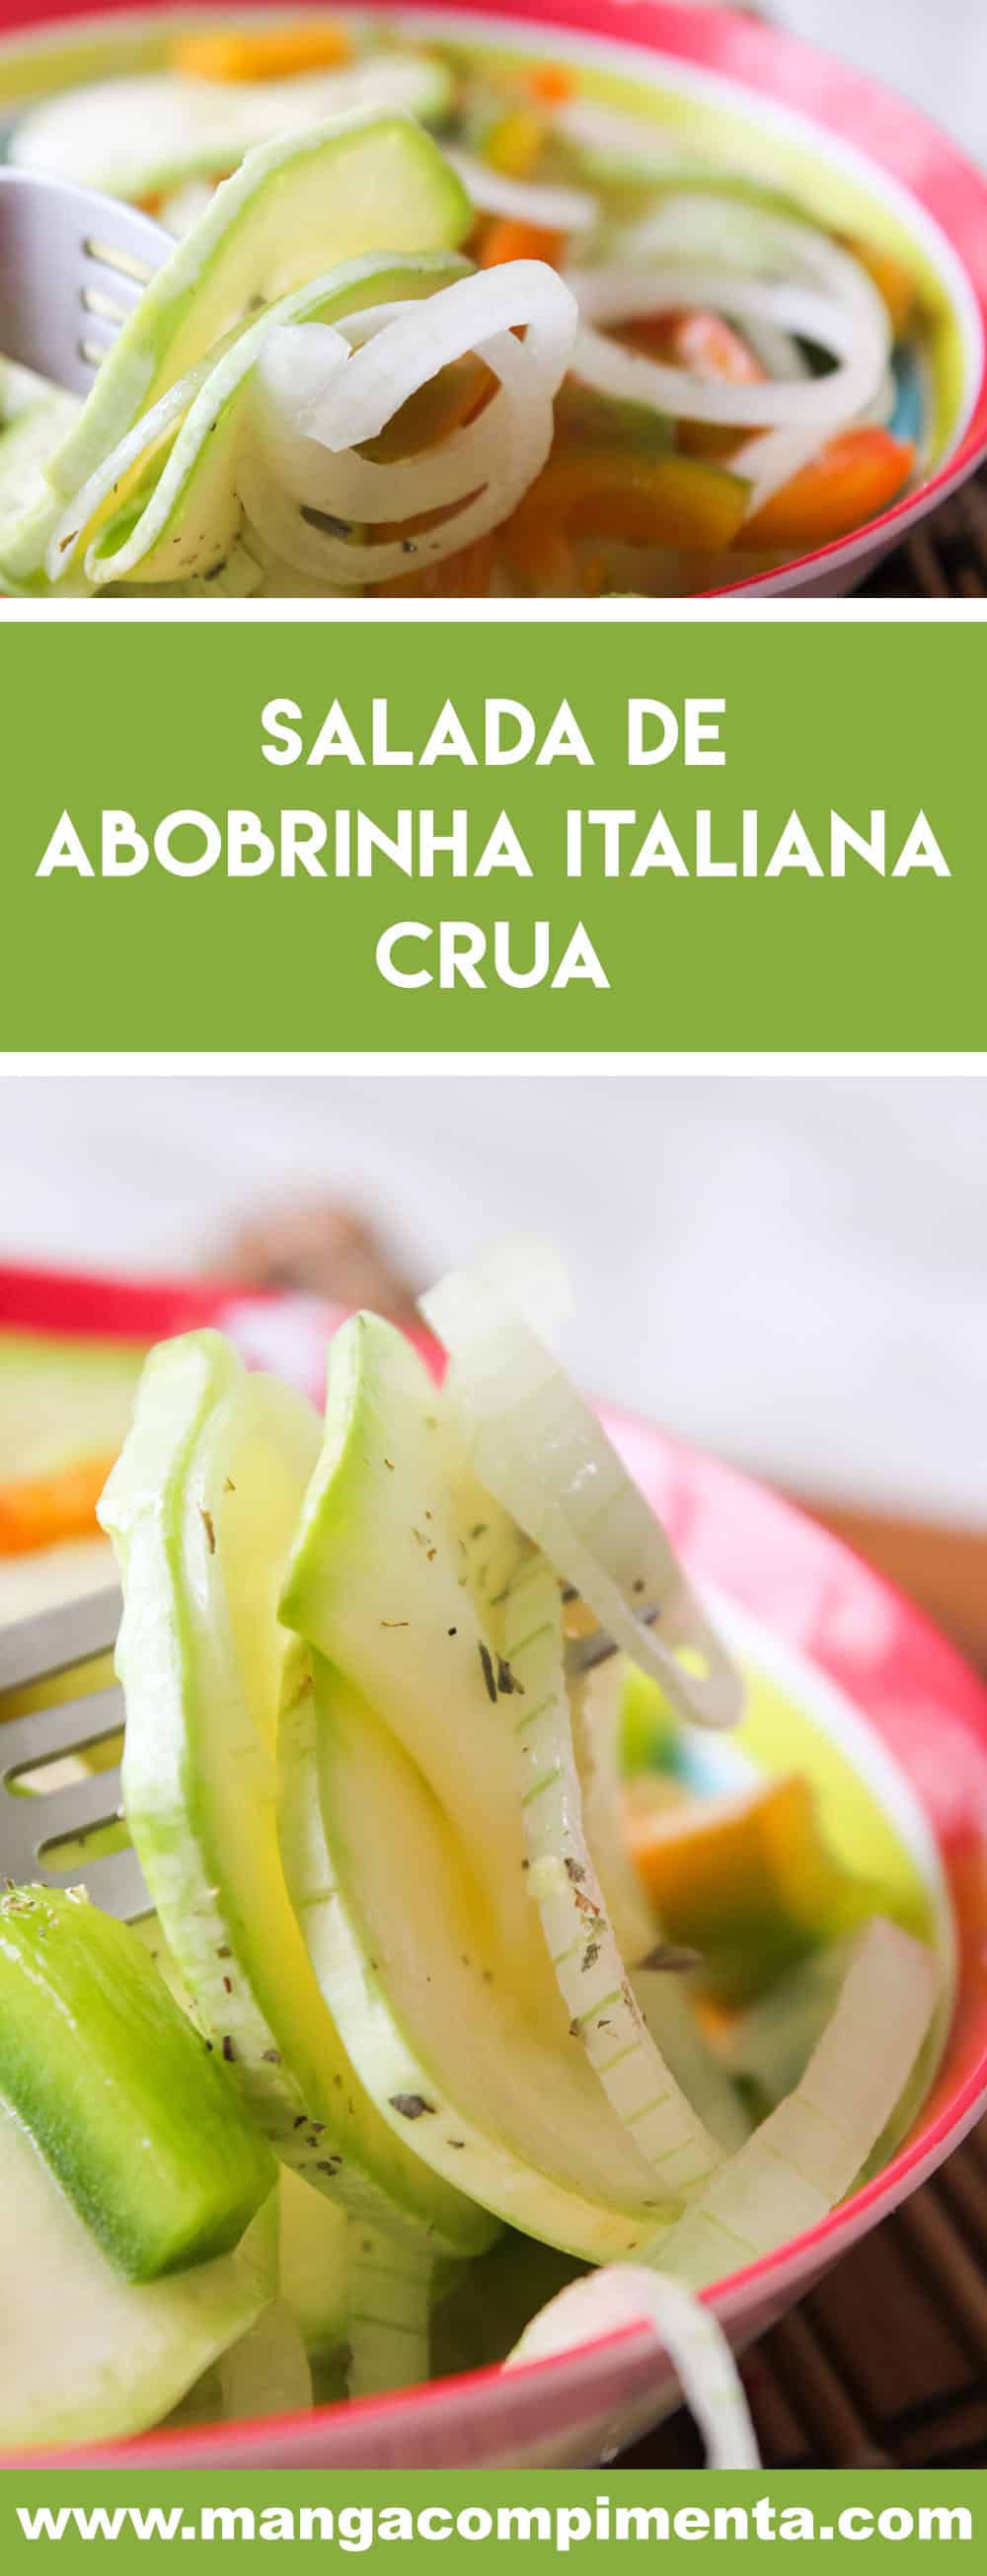 Receita de Salada de Abobrinha Italiana Crua - prepare para o almoço da semana!